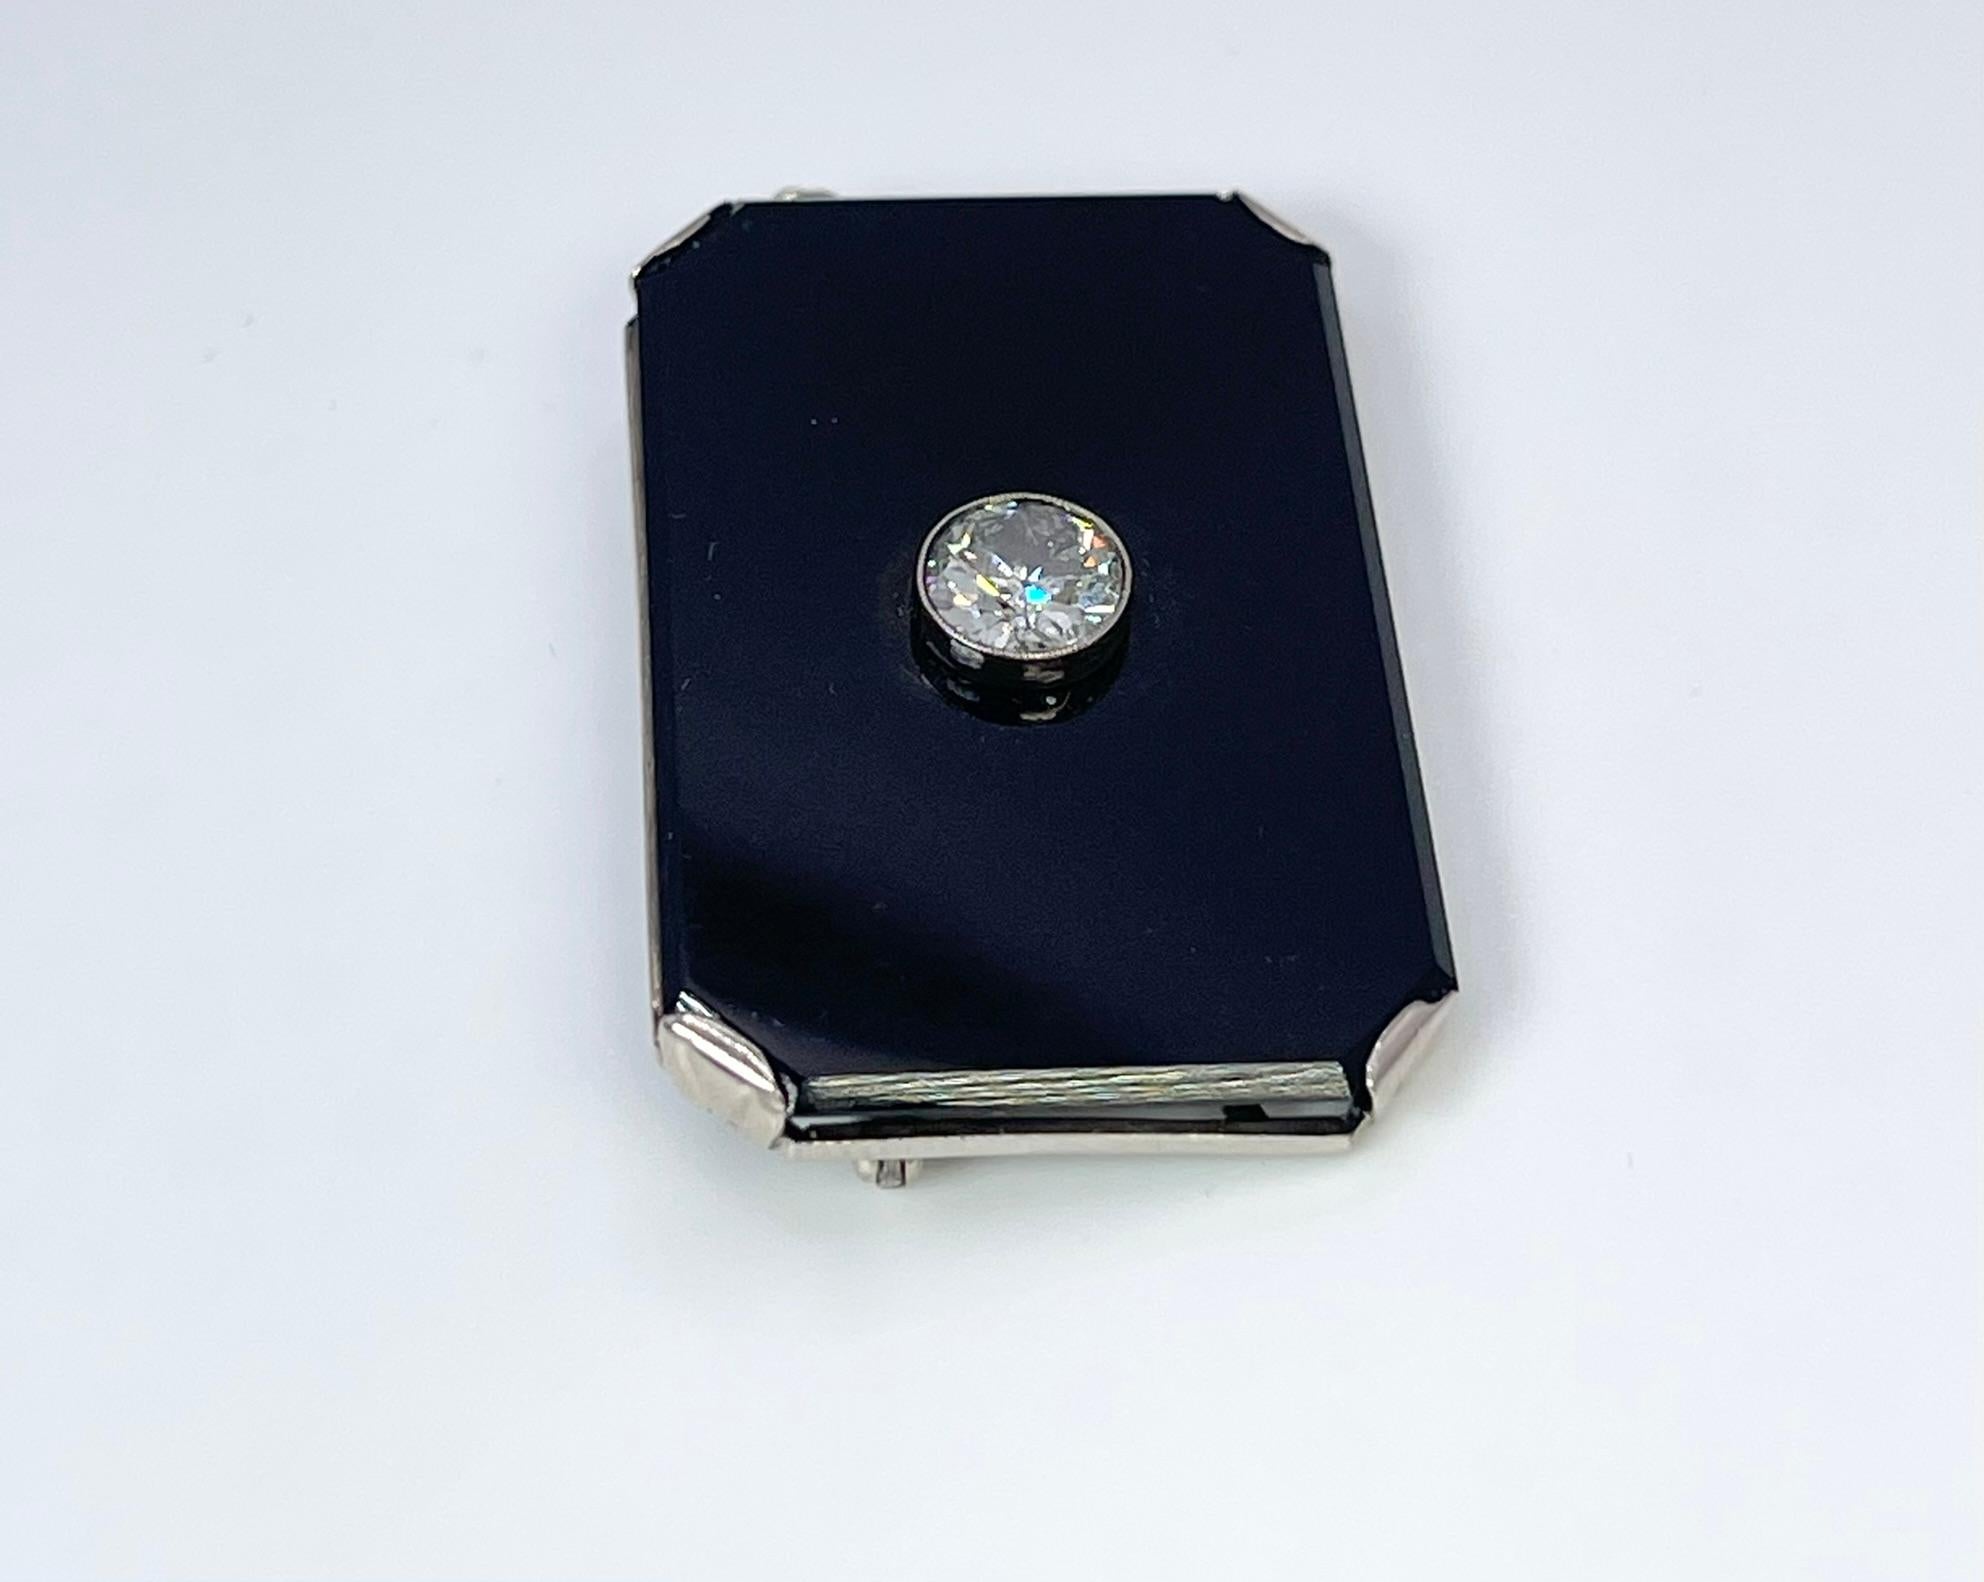 Seltene Art Deco Brosche mit einem großen Onyx und einem einzelnen Diamanten in der Mitte, der Diamant ist Old European cut. Das Jahr der Brosche ist unbekannt.

MITTELSTEIN: NATÜRLICHER DIAMANT
KARAT: 1.00CT
KLARHEIT: I2
FARBE: I
SCHNITT: RUNDE